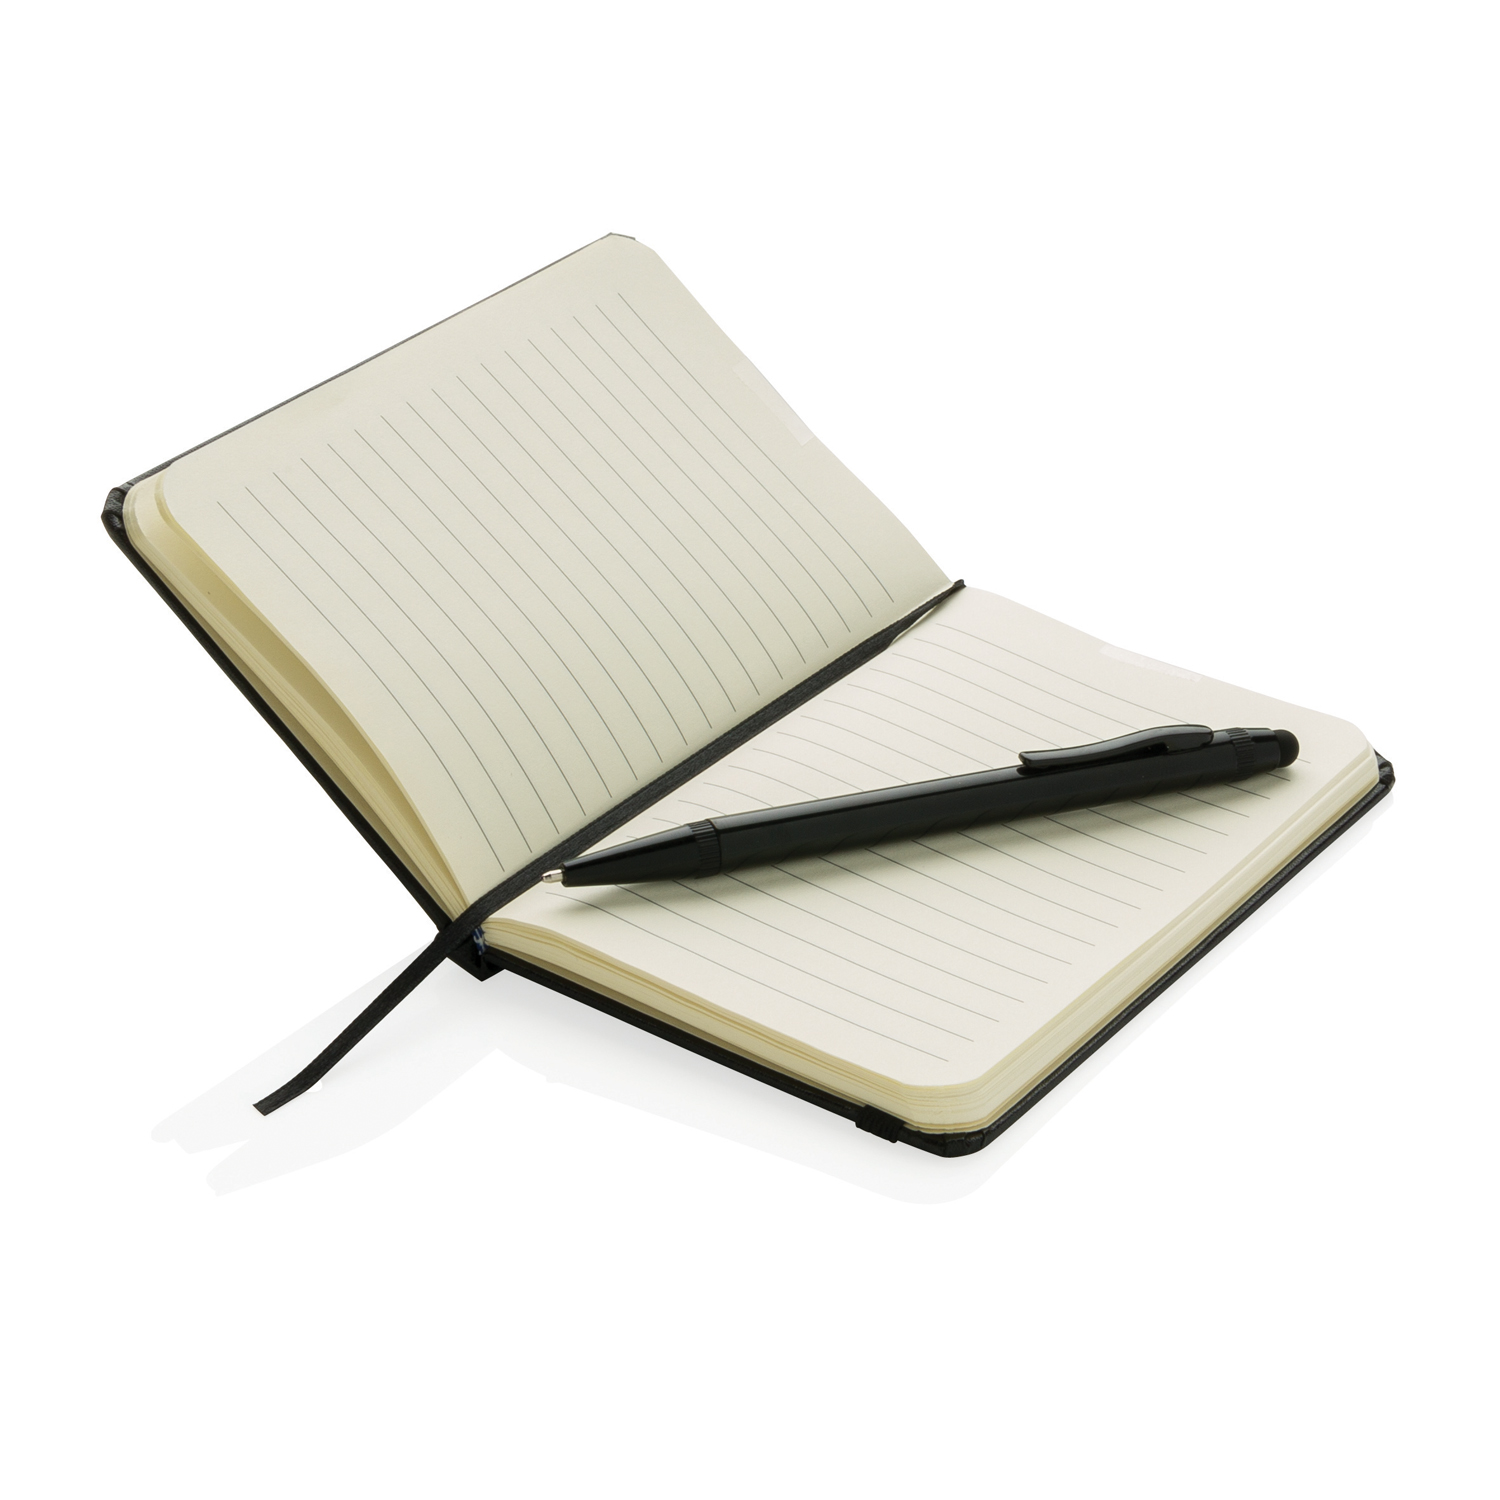 Блокнот для записей Basic в твердой обложке c ручкой-стилус